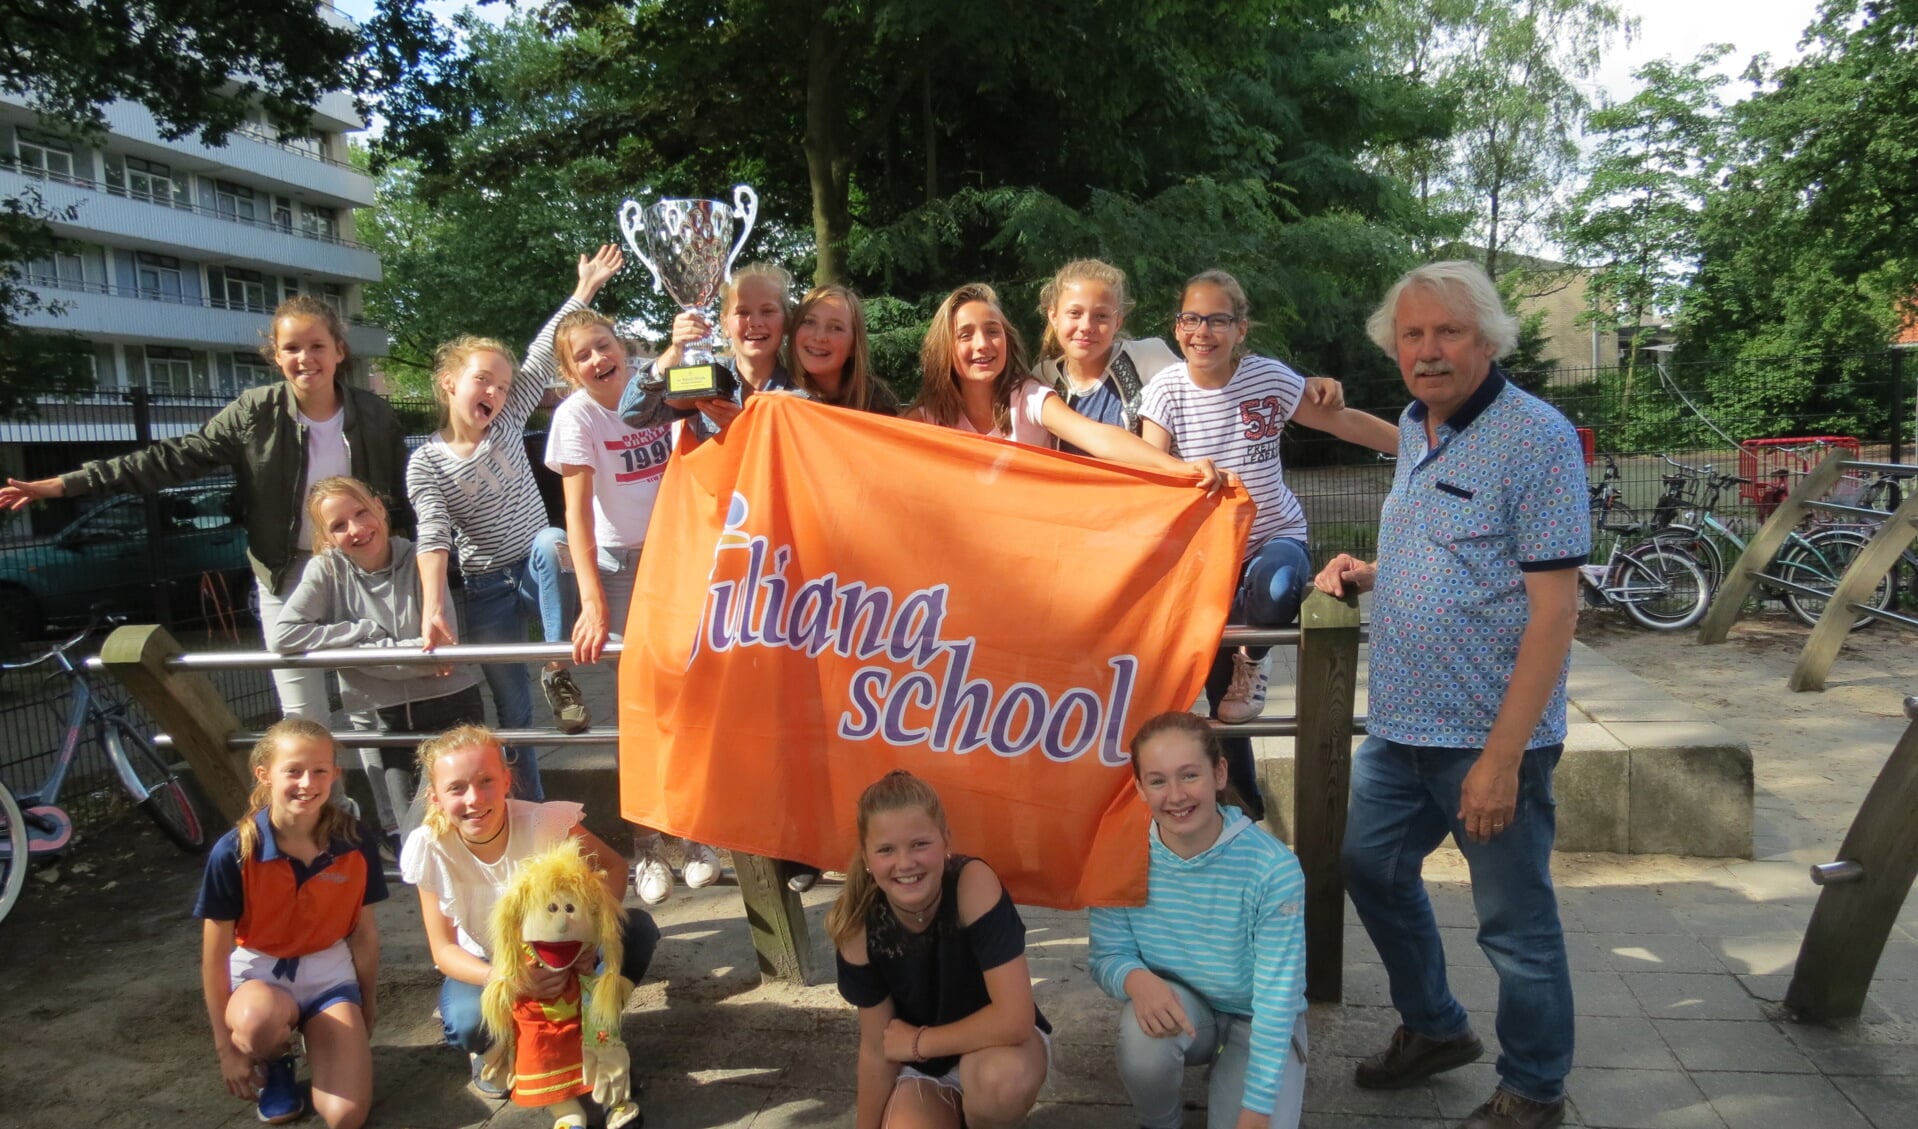  Het team van de Julianaschool dat op het Cruyff Courts-toernooi in Enschede tweede werd met de beker.